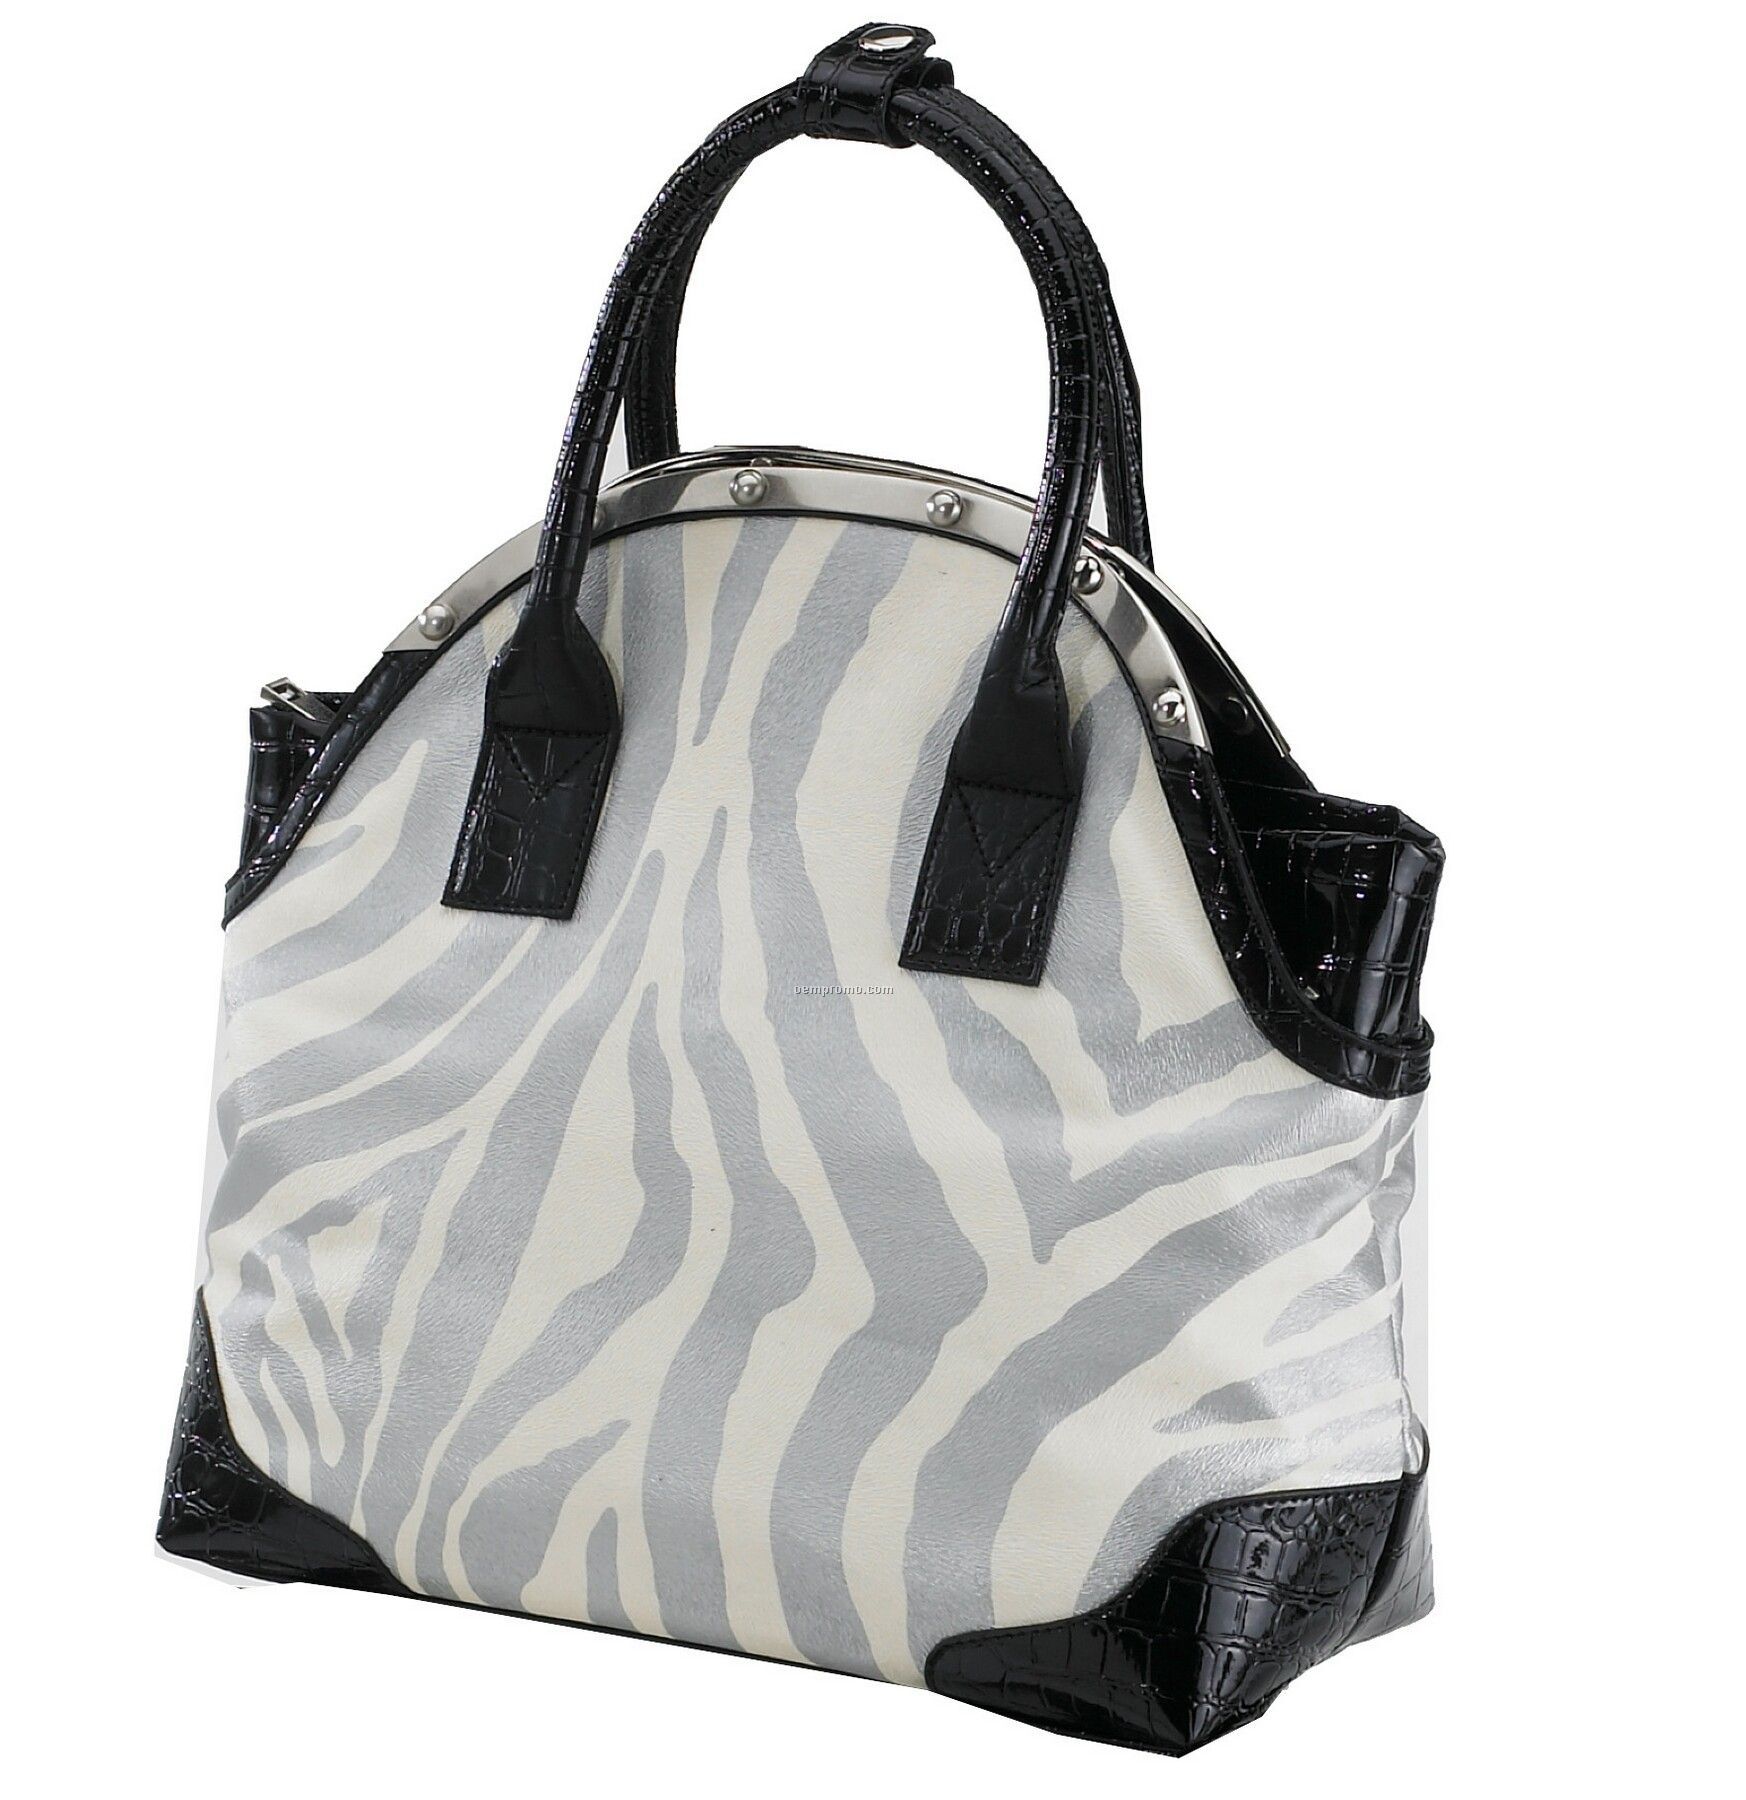 Matching Tote Bag - Metallic Zebra Pattern